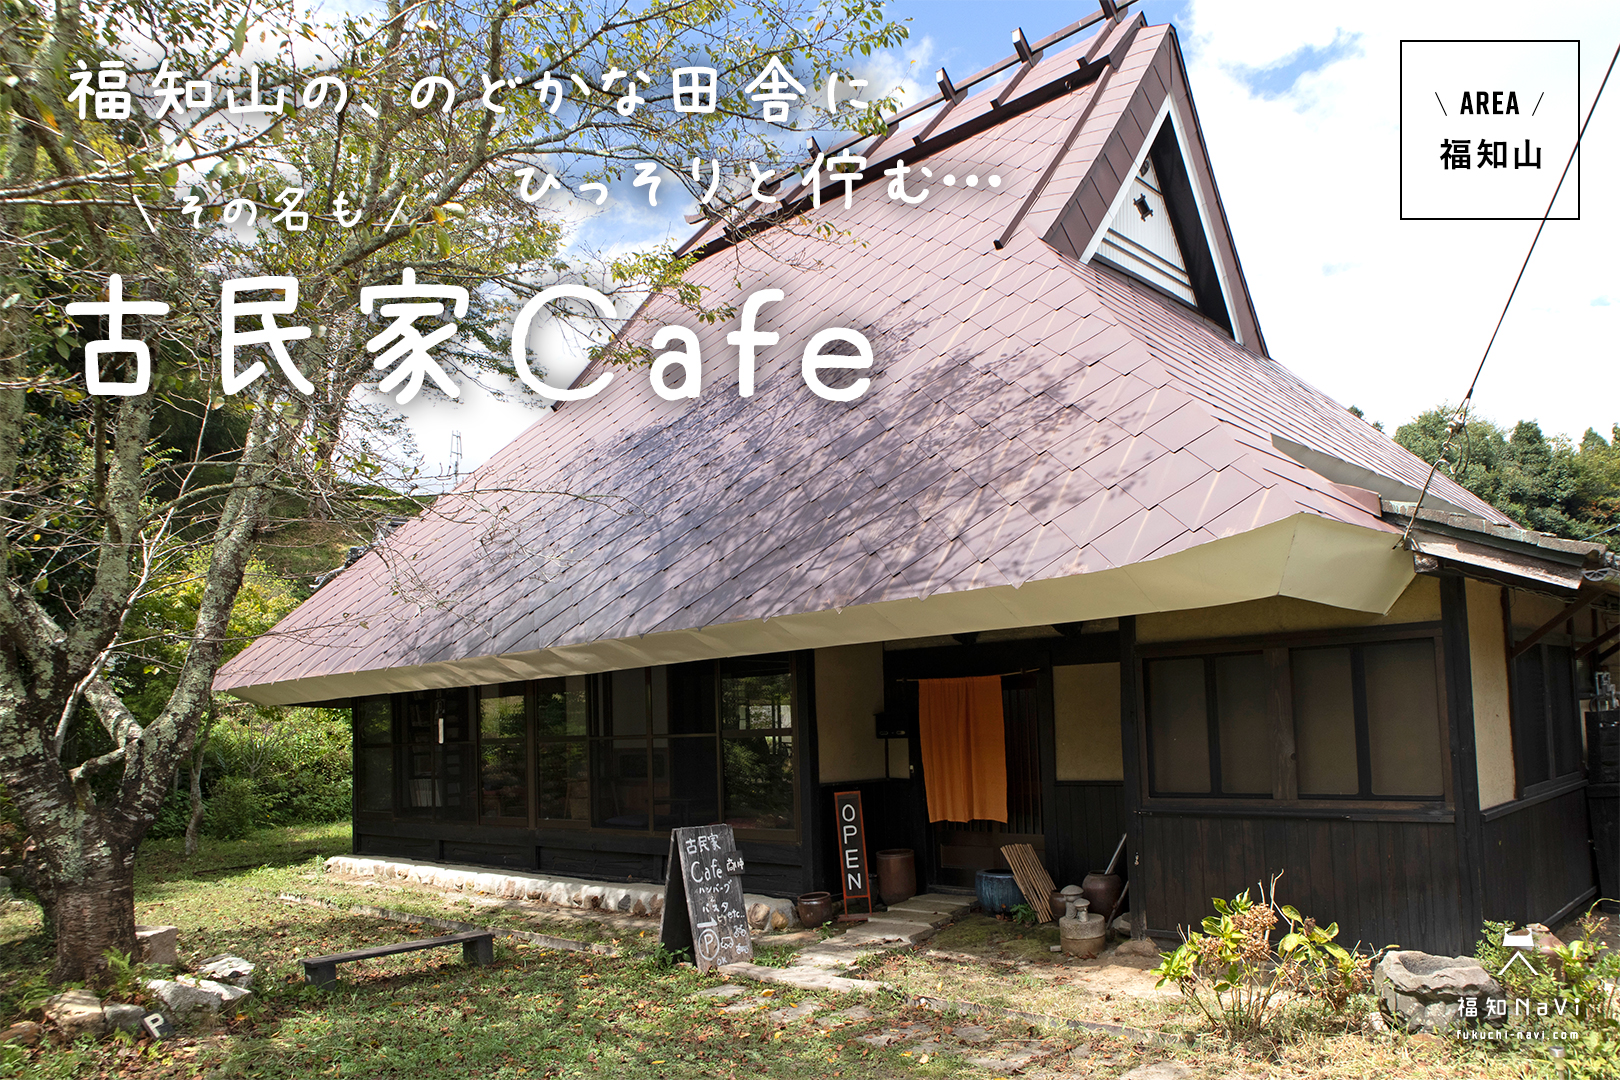 福知山 のどかな田舎でひっそりと佇む その名も 古民家cafe おばぁちゃんの家のようにくつろげる素敵な空間 福知navi 福知山 周辺のクチコミレポートブログ